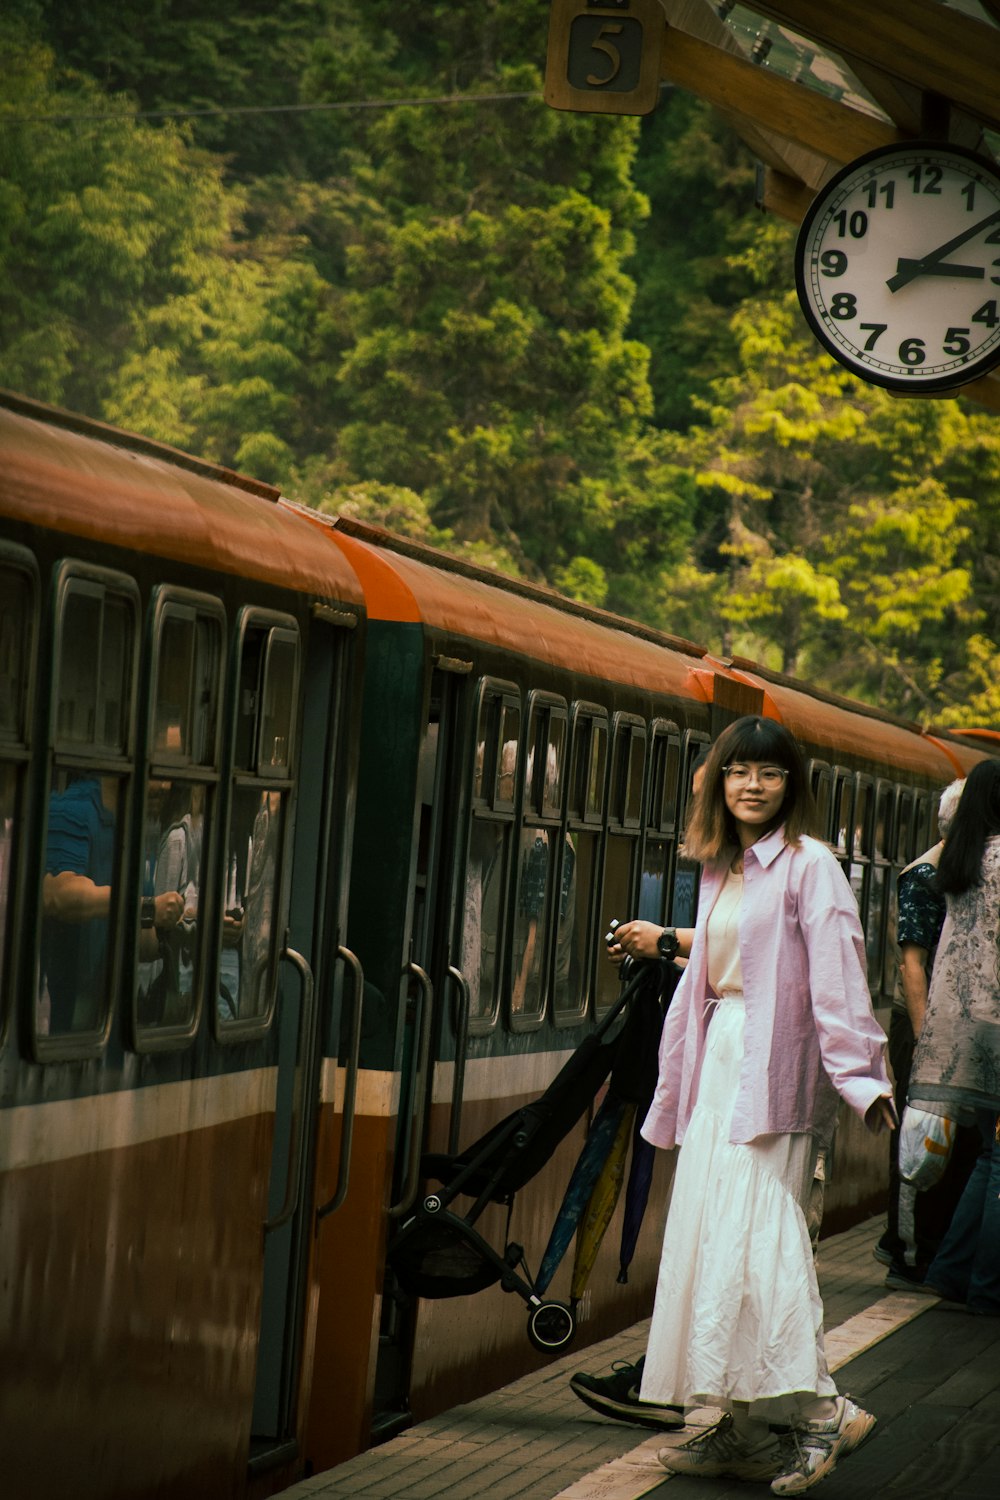 Eine Frau in einem langen weißen Kleid steht neben einem Zug